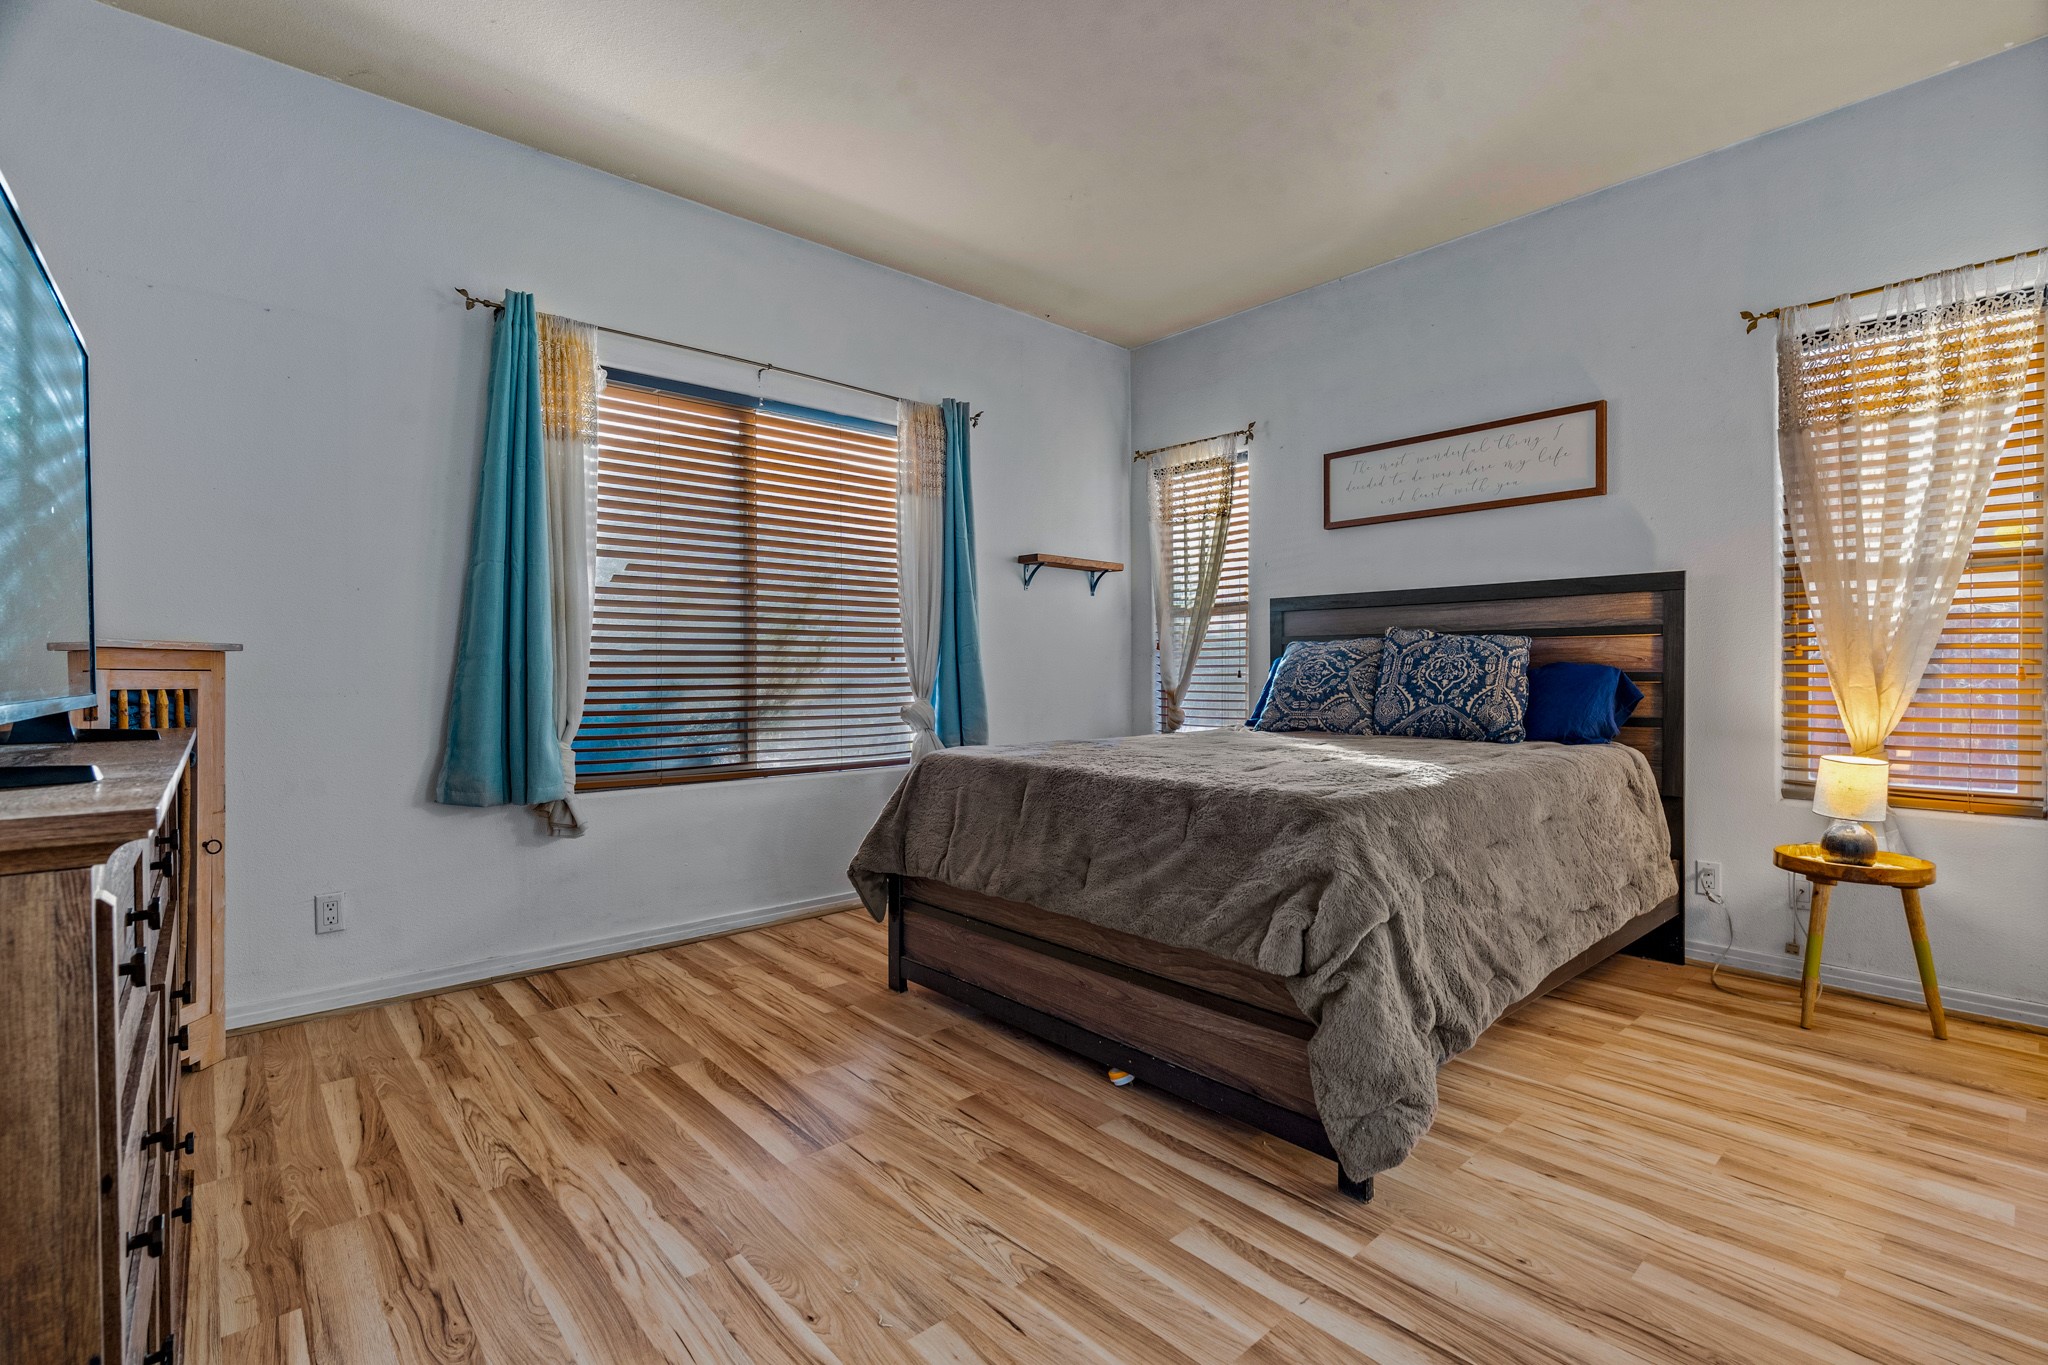 4717 Solecito Loop, Santa Fe, New Mexico 87507, 3 Bedrooms Bedrooms, ,2 BathroomsBathrooms,Residential,For Sale,4717 Solecito Loop,202342097